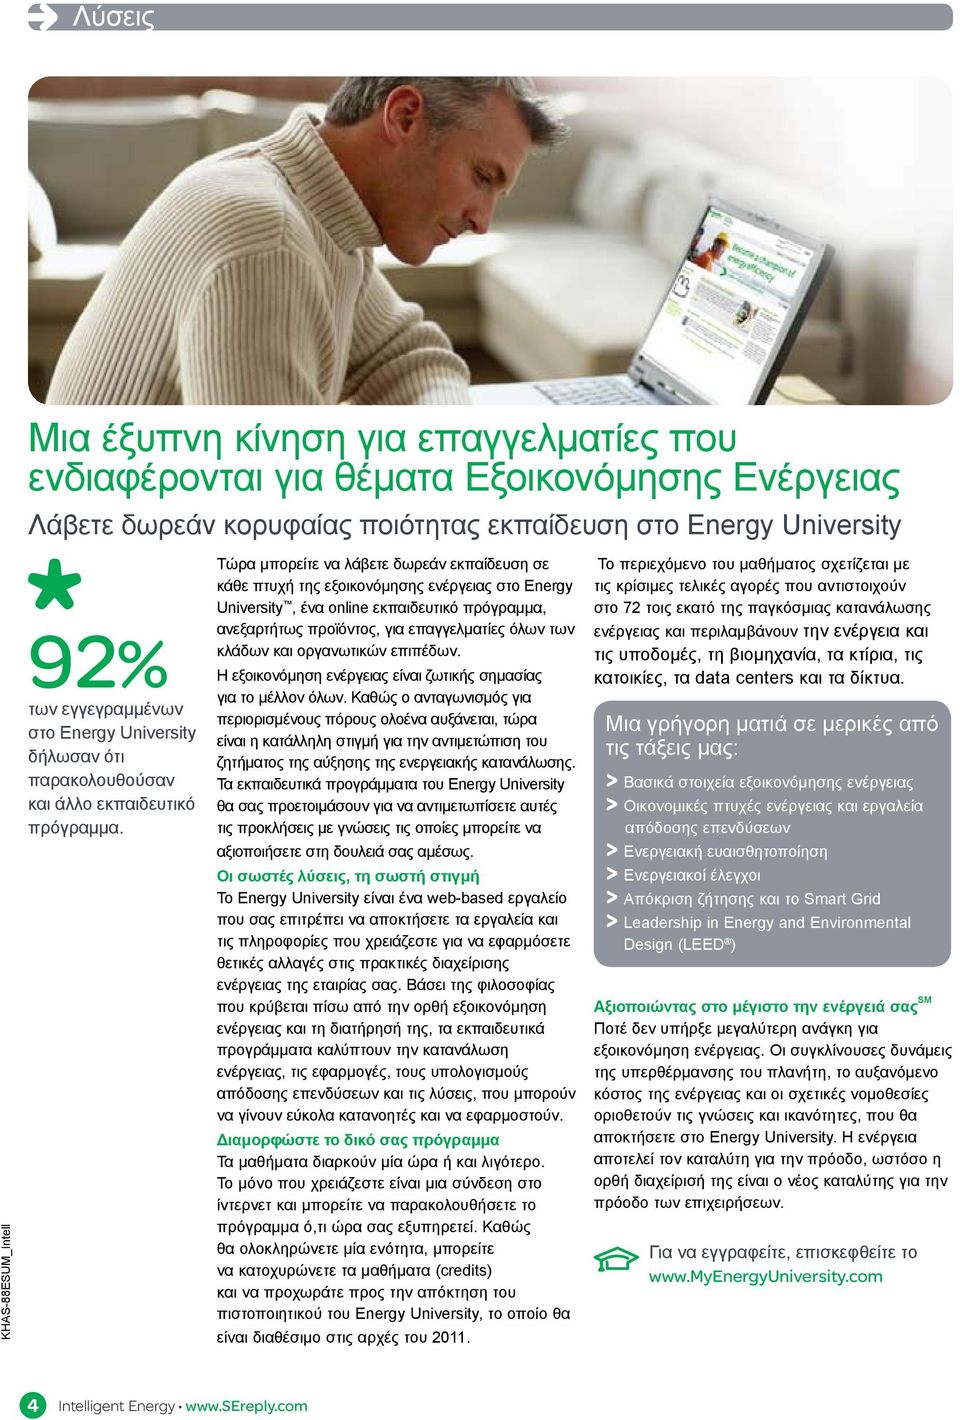 Τώρα μπορείτε να λάβετε δωρεάν εκπαίδευση σε κάθε πτυχή της εξοικονόμησης ενέργειας στο Energy University, ένα online εκπαιδευτικό πρόγραμμα, ανεξαρτήτως προϊόντος, για επαγγελματίες όλων των κλάδων